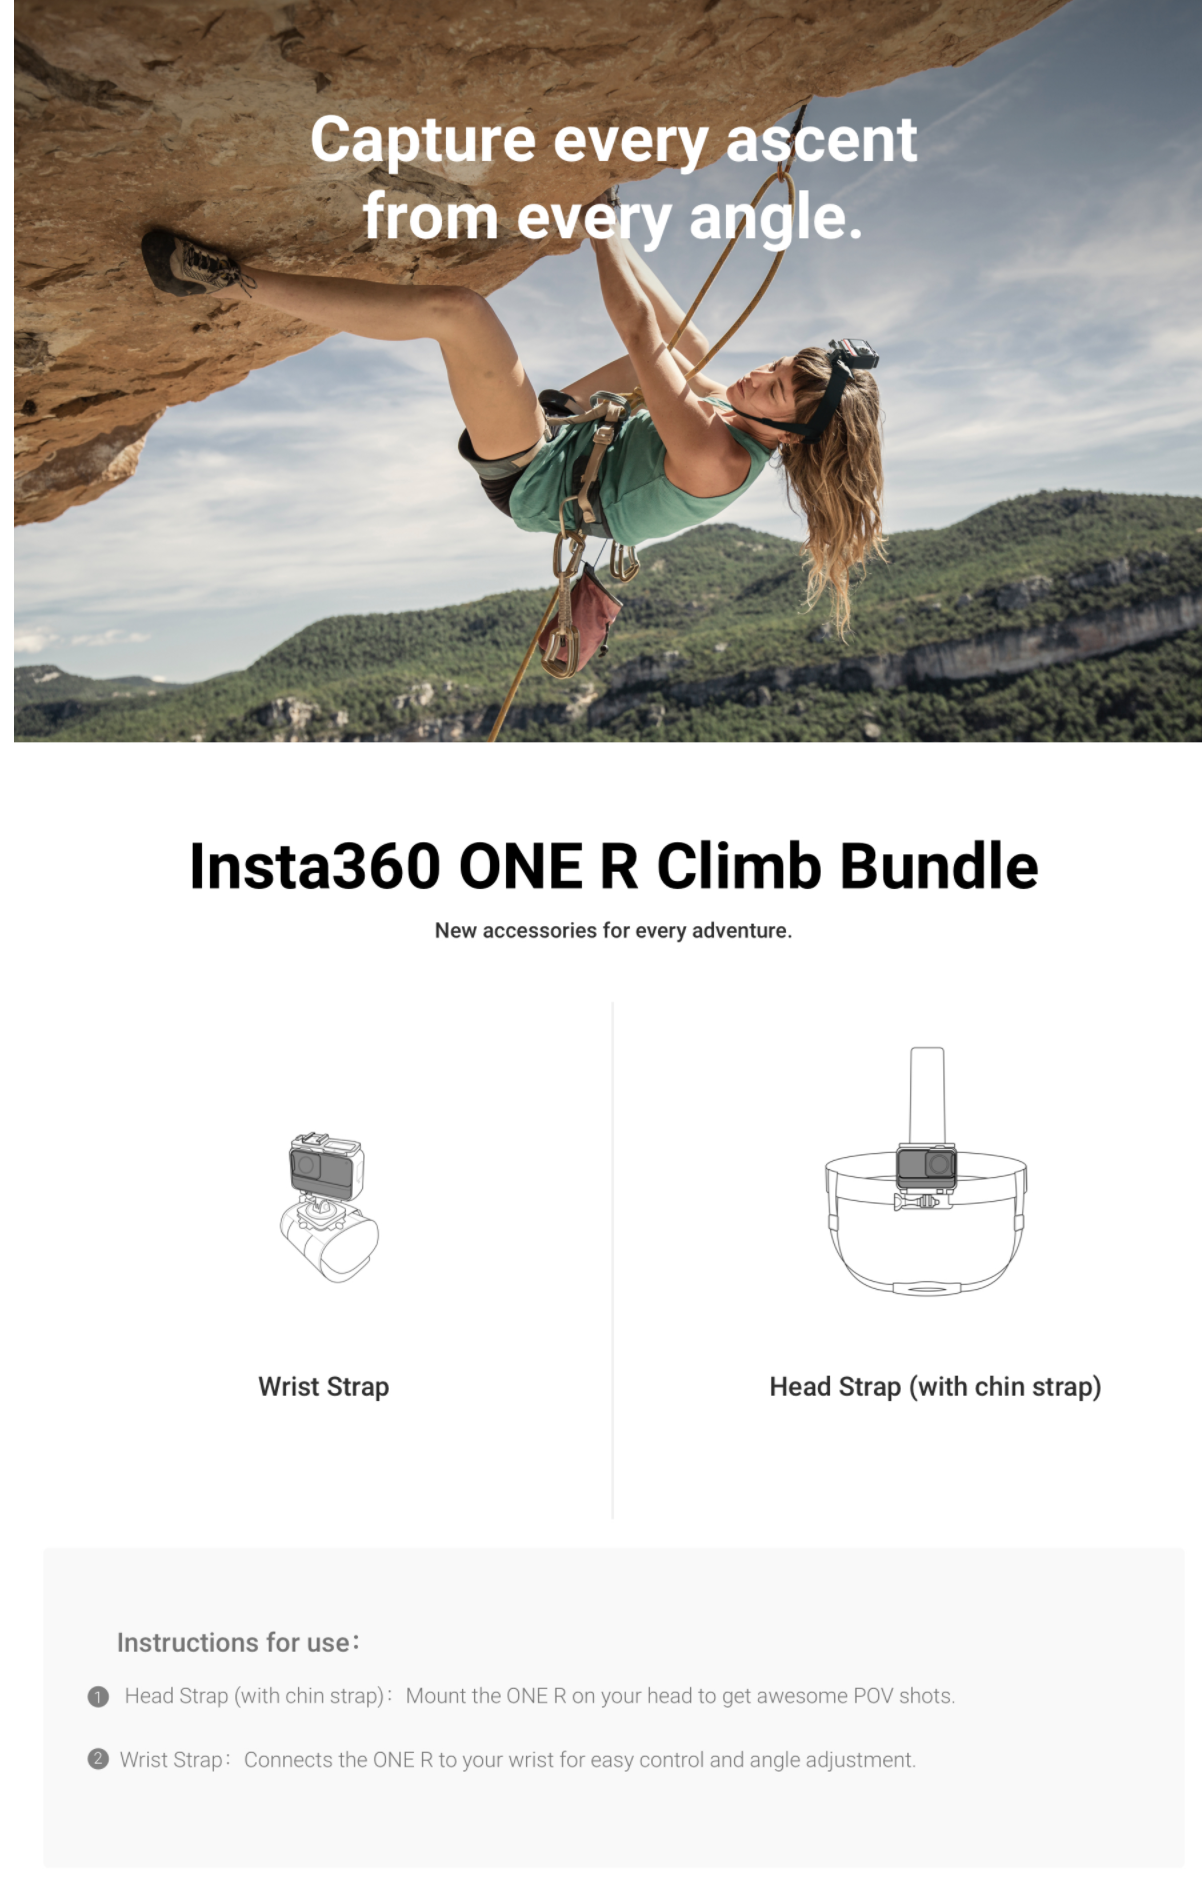 Insta360-climb-bundle.png (1.51 MB)